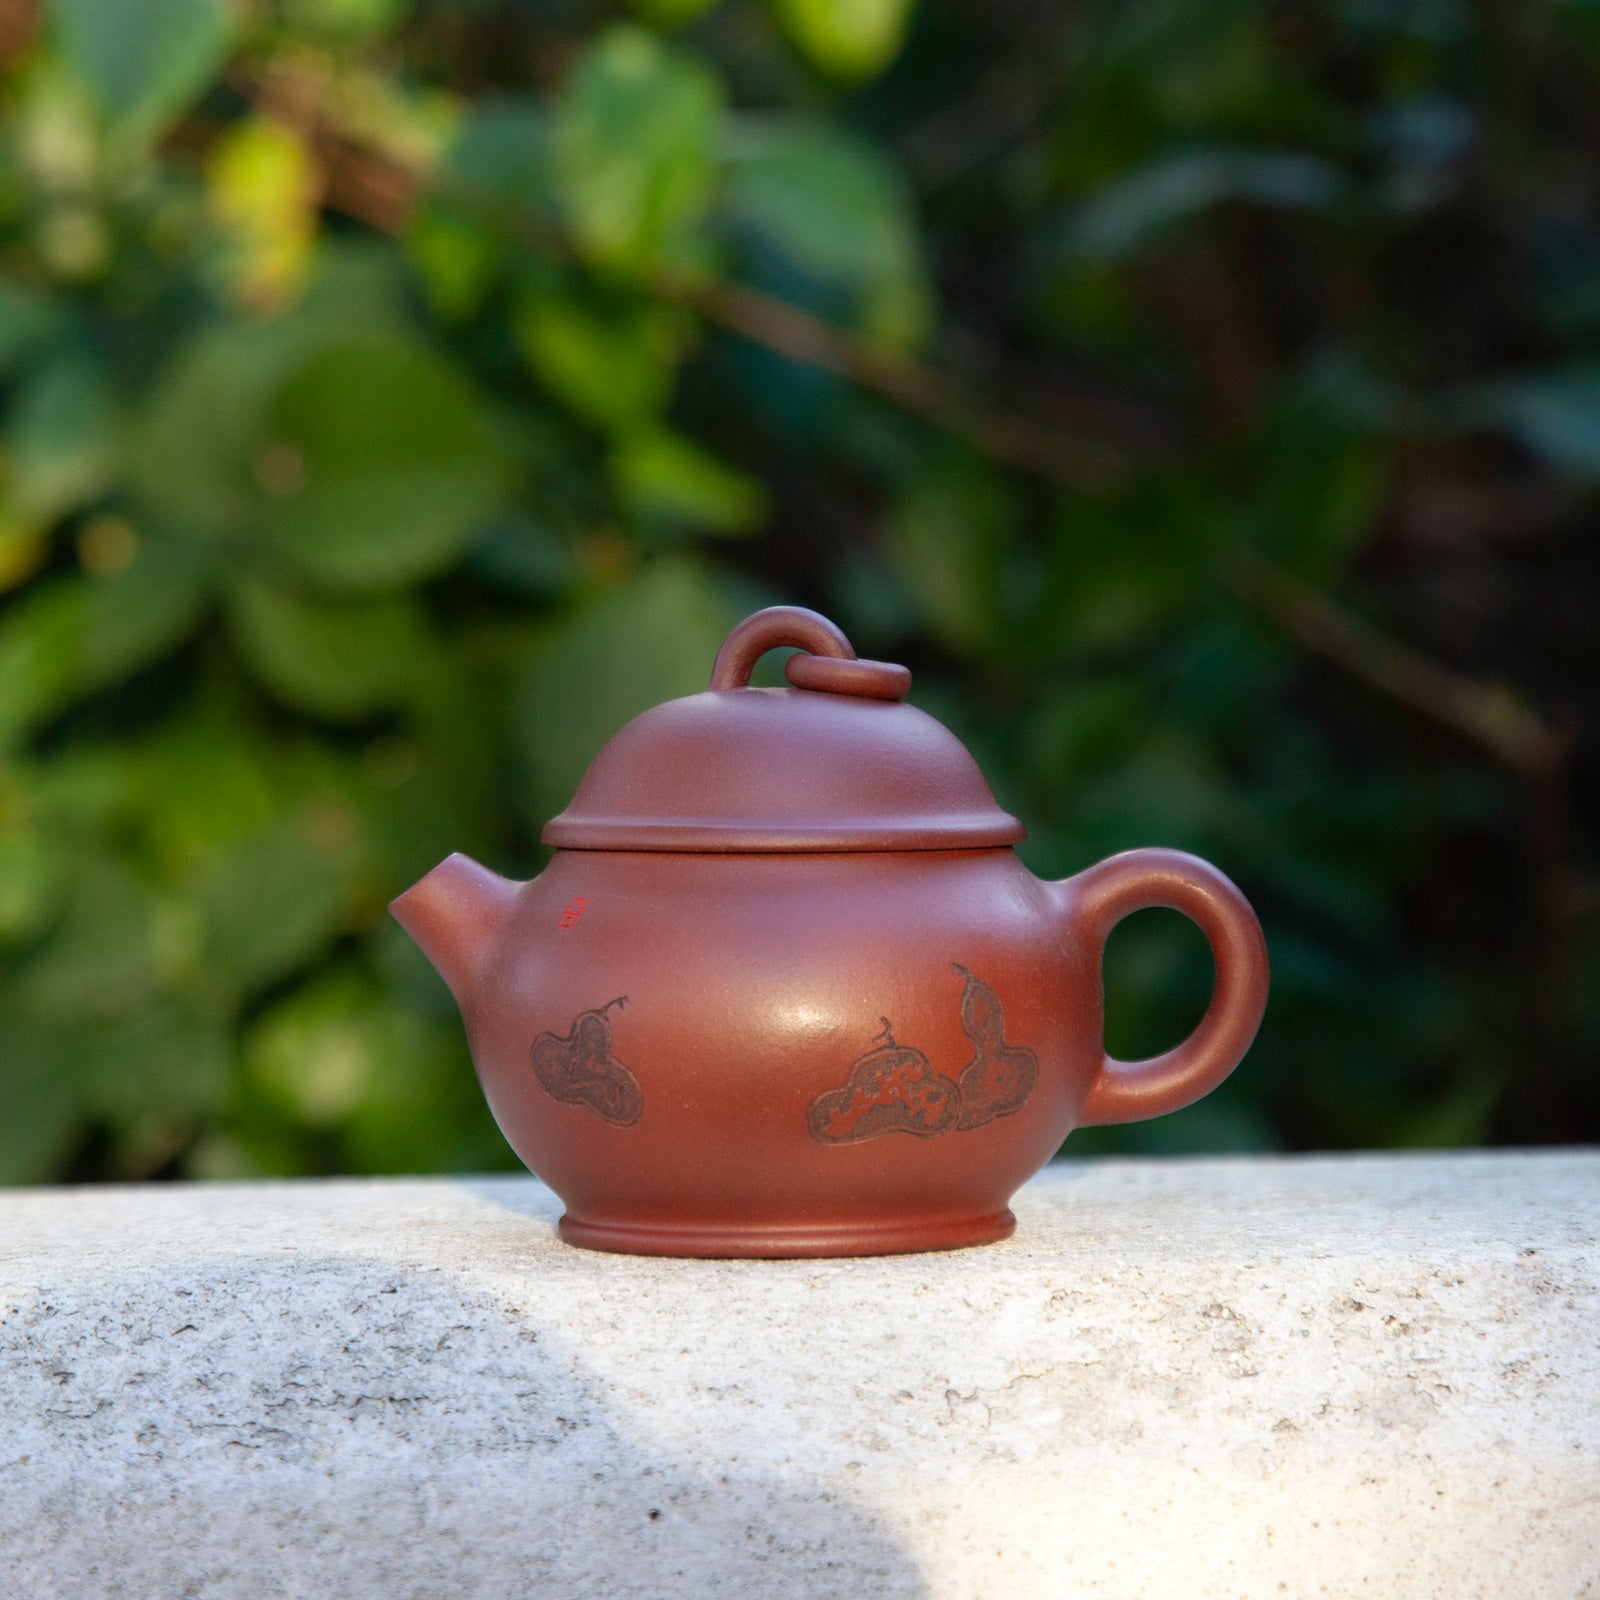 売れ筋ランキングも Old Tibetan Wooden Tea Cup チャポール バター茶 